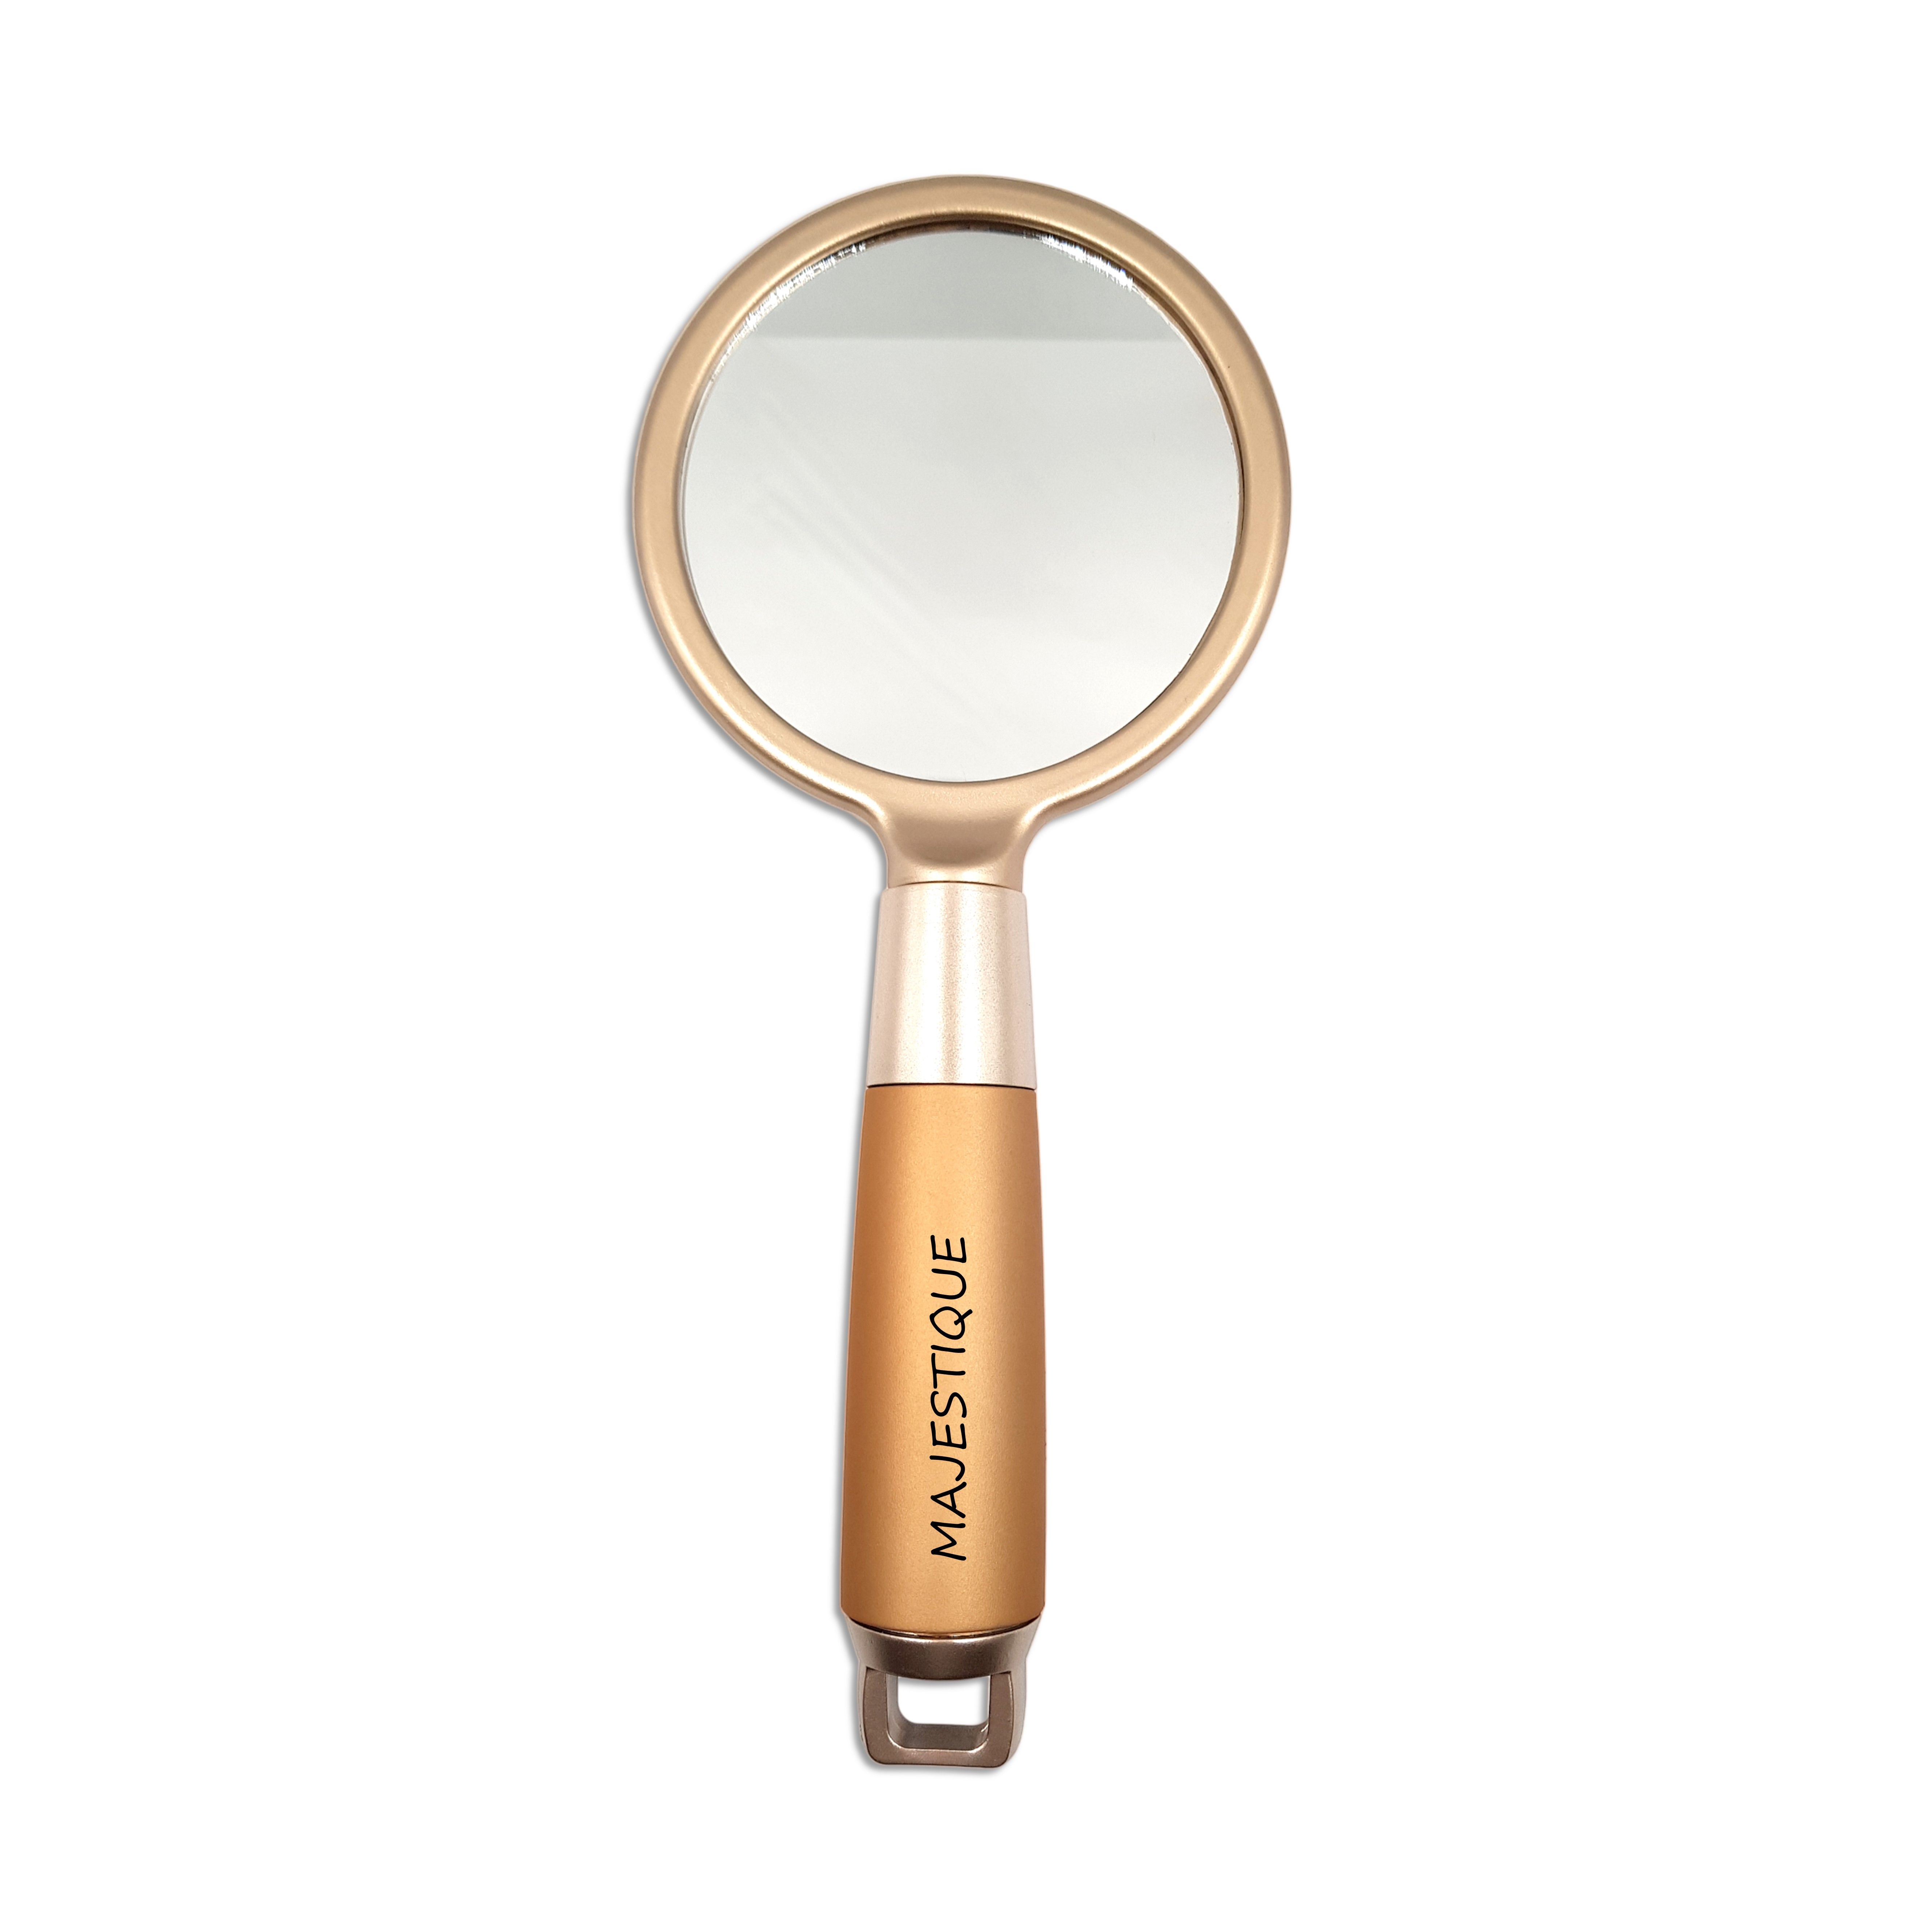 Majestique Golden Handle Mirror Travel Makeup Mirror